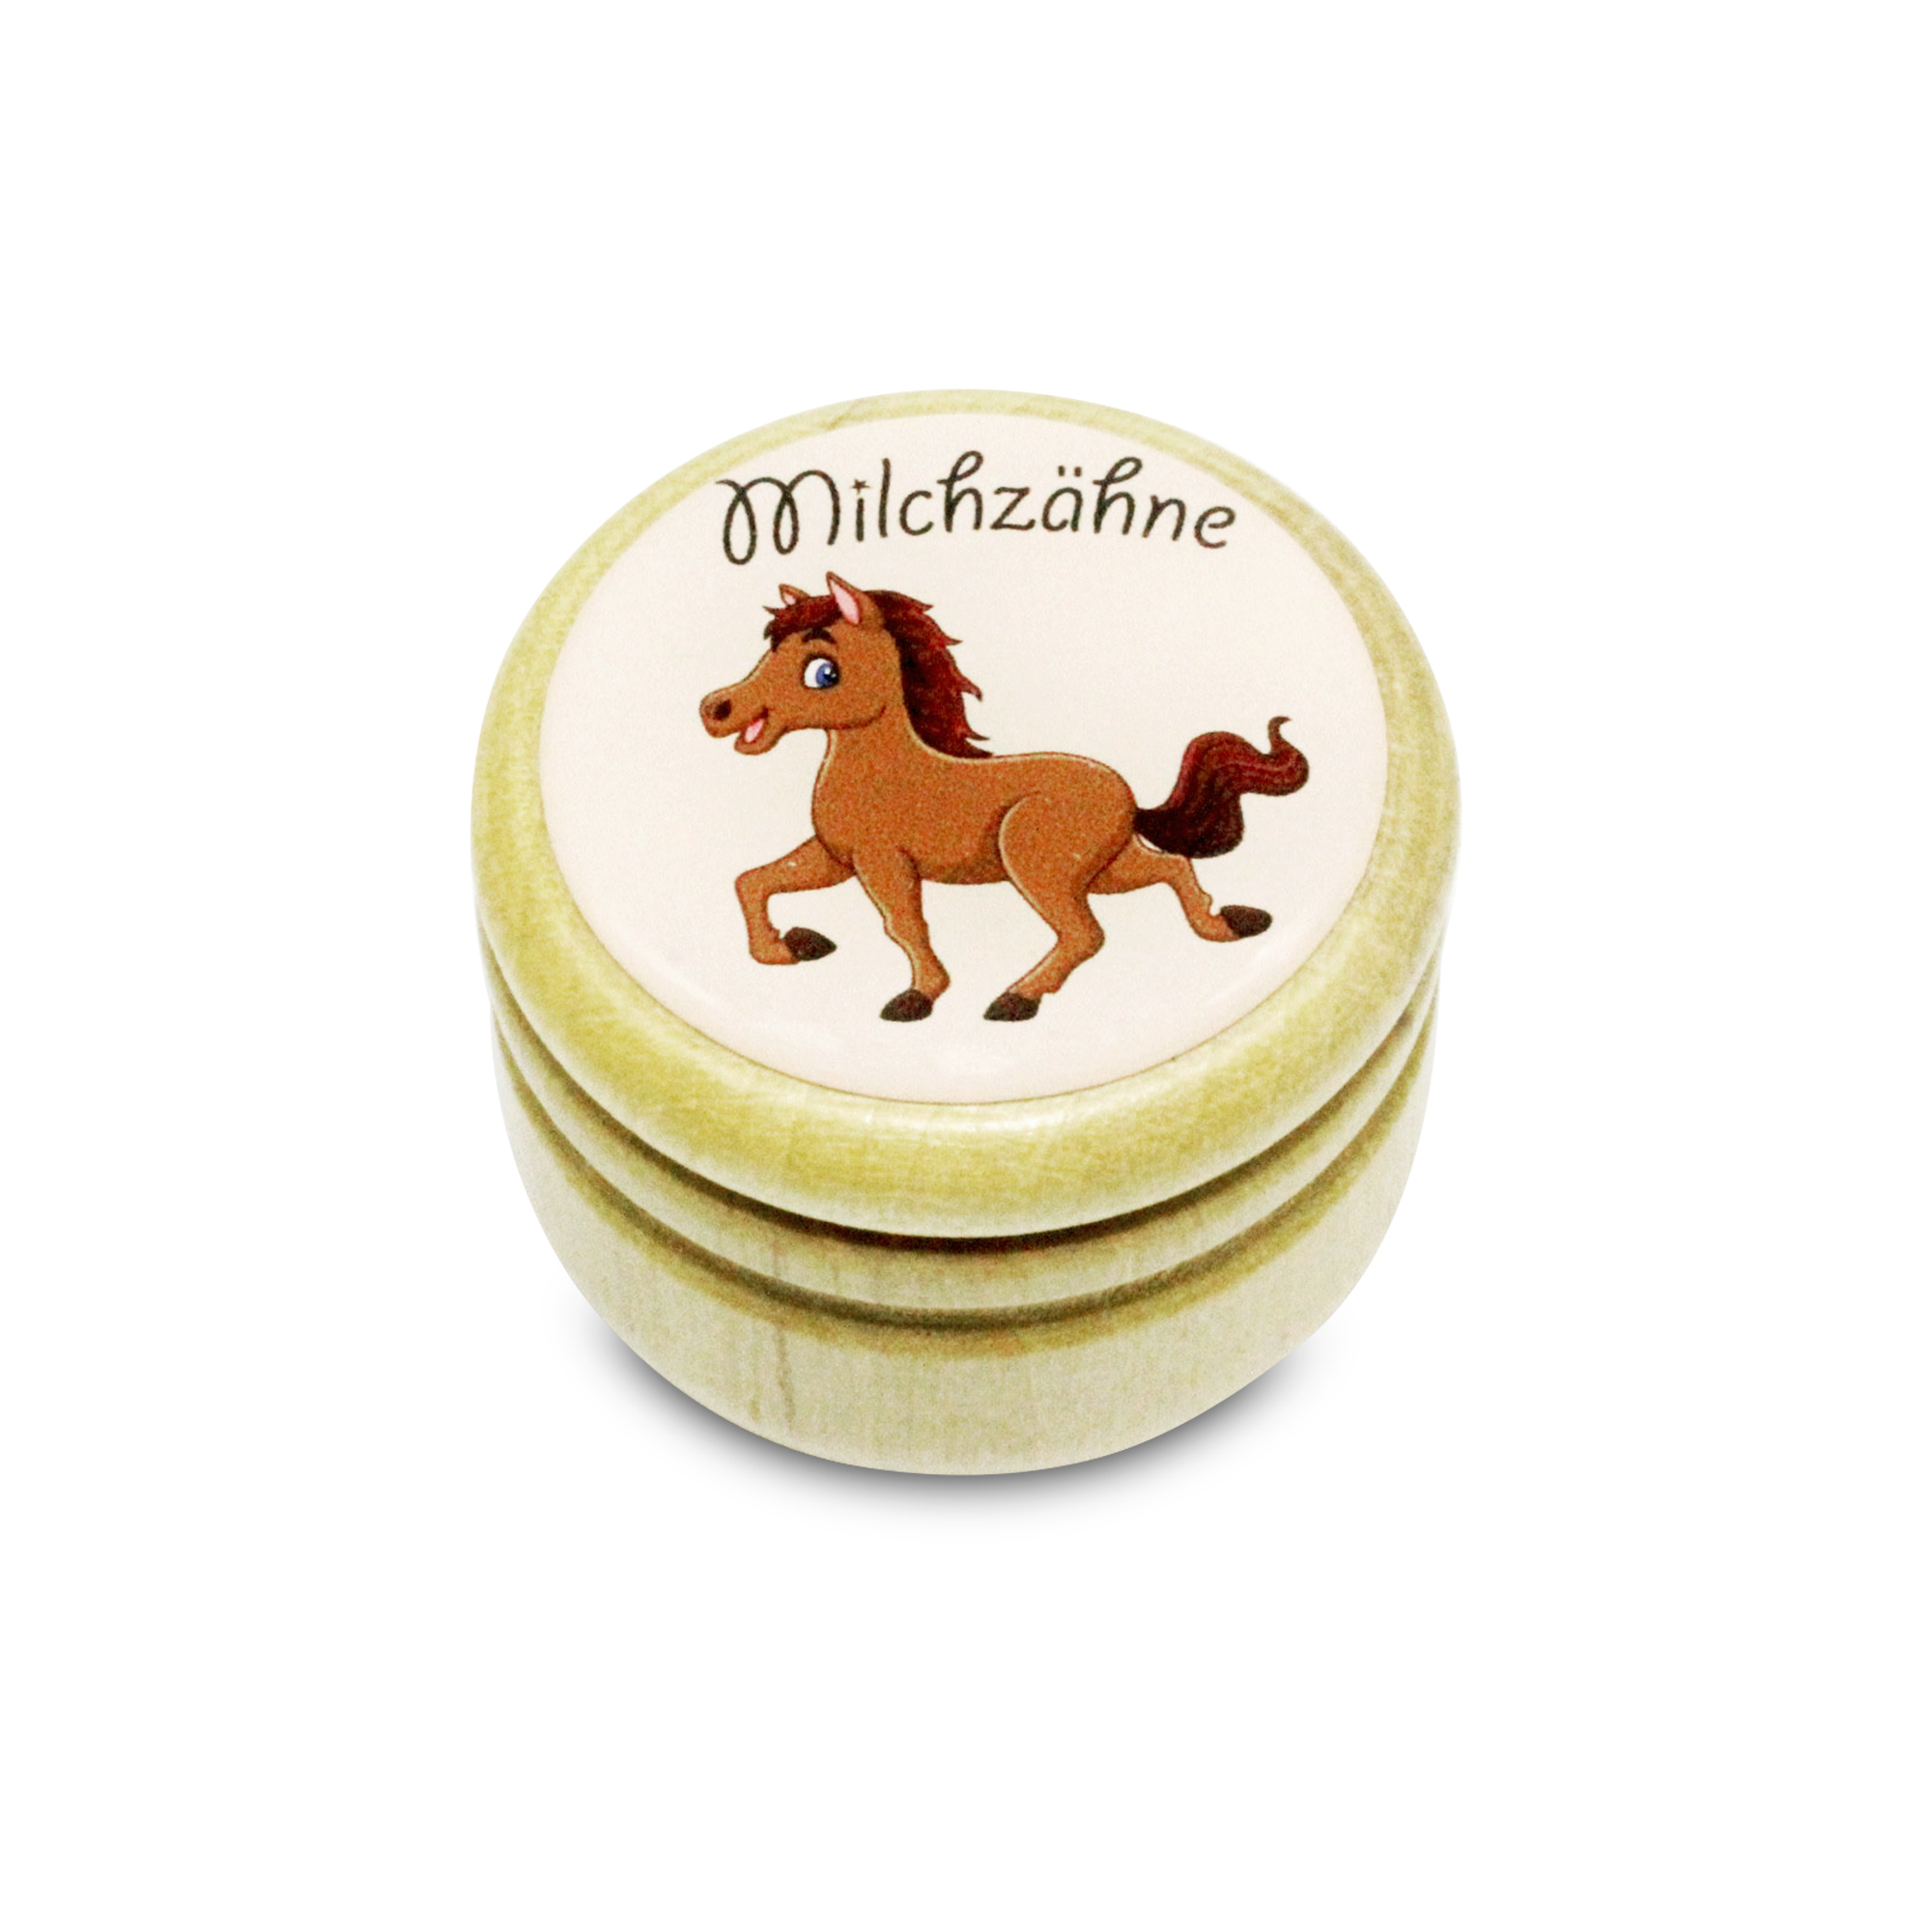 Milchzahndose Pferd Zahndose Milchzähne Bilderdose aus Holz mit Drehverschluss 44 mm ( Pferd ) - 7013